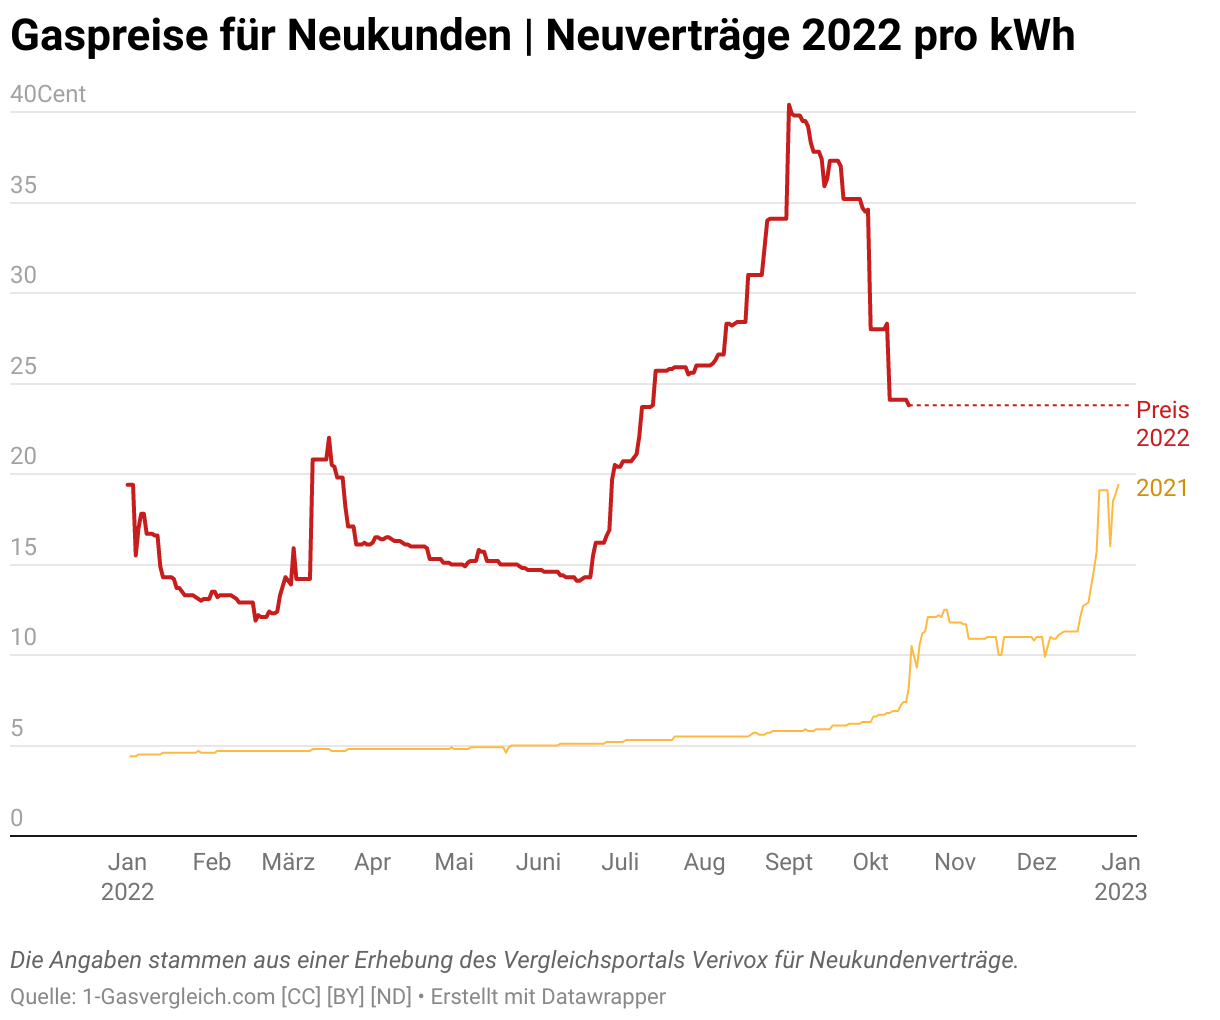 gaspreise aktuell 2022 pro kwh, Quelle: https://1-gasvergleich.com/gaspreise/